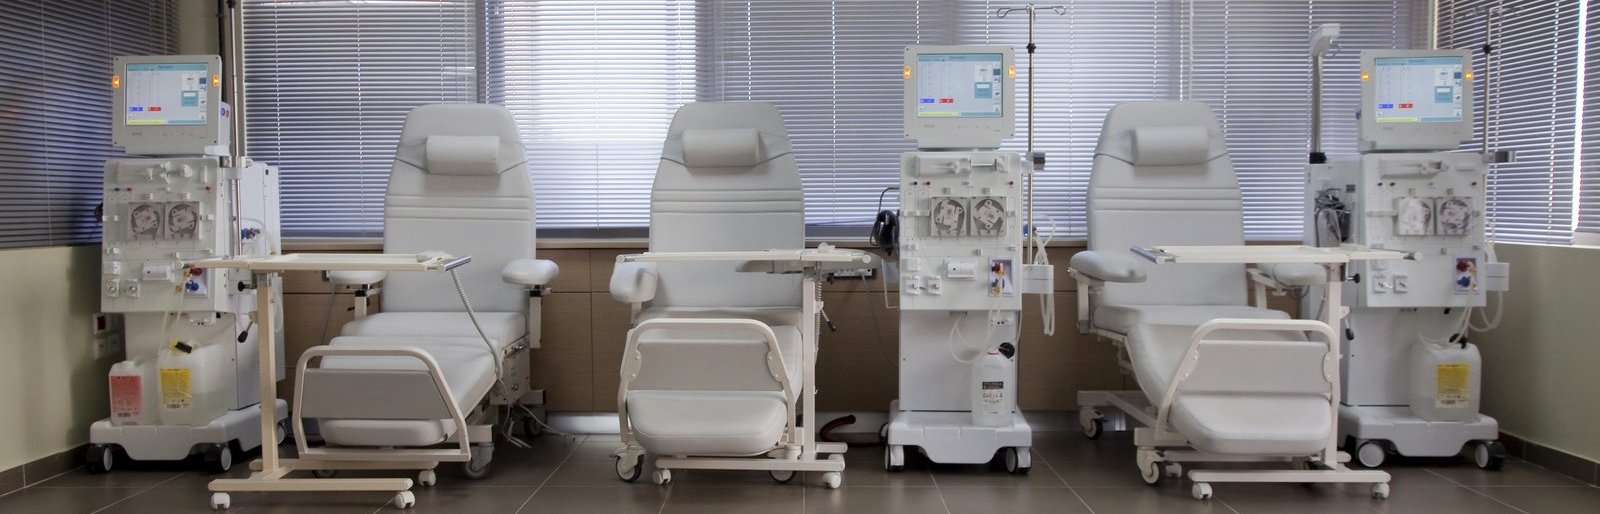 Το Ίδρυμα Ευγενίδου έκανε δωρεά ιατρικού εξοπλισμού στη μονάδα τεχνητού νεφρού του «ΑΤΤΙΚΟΝ»